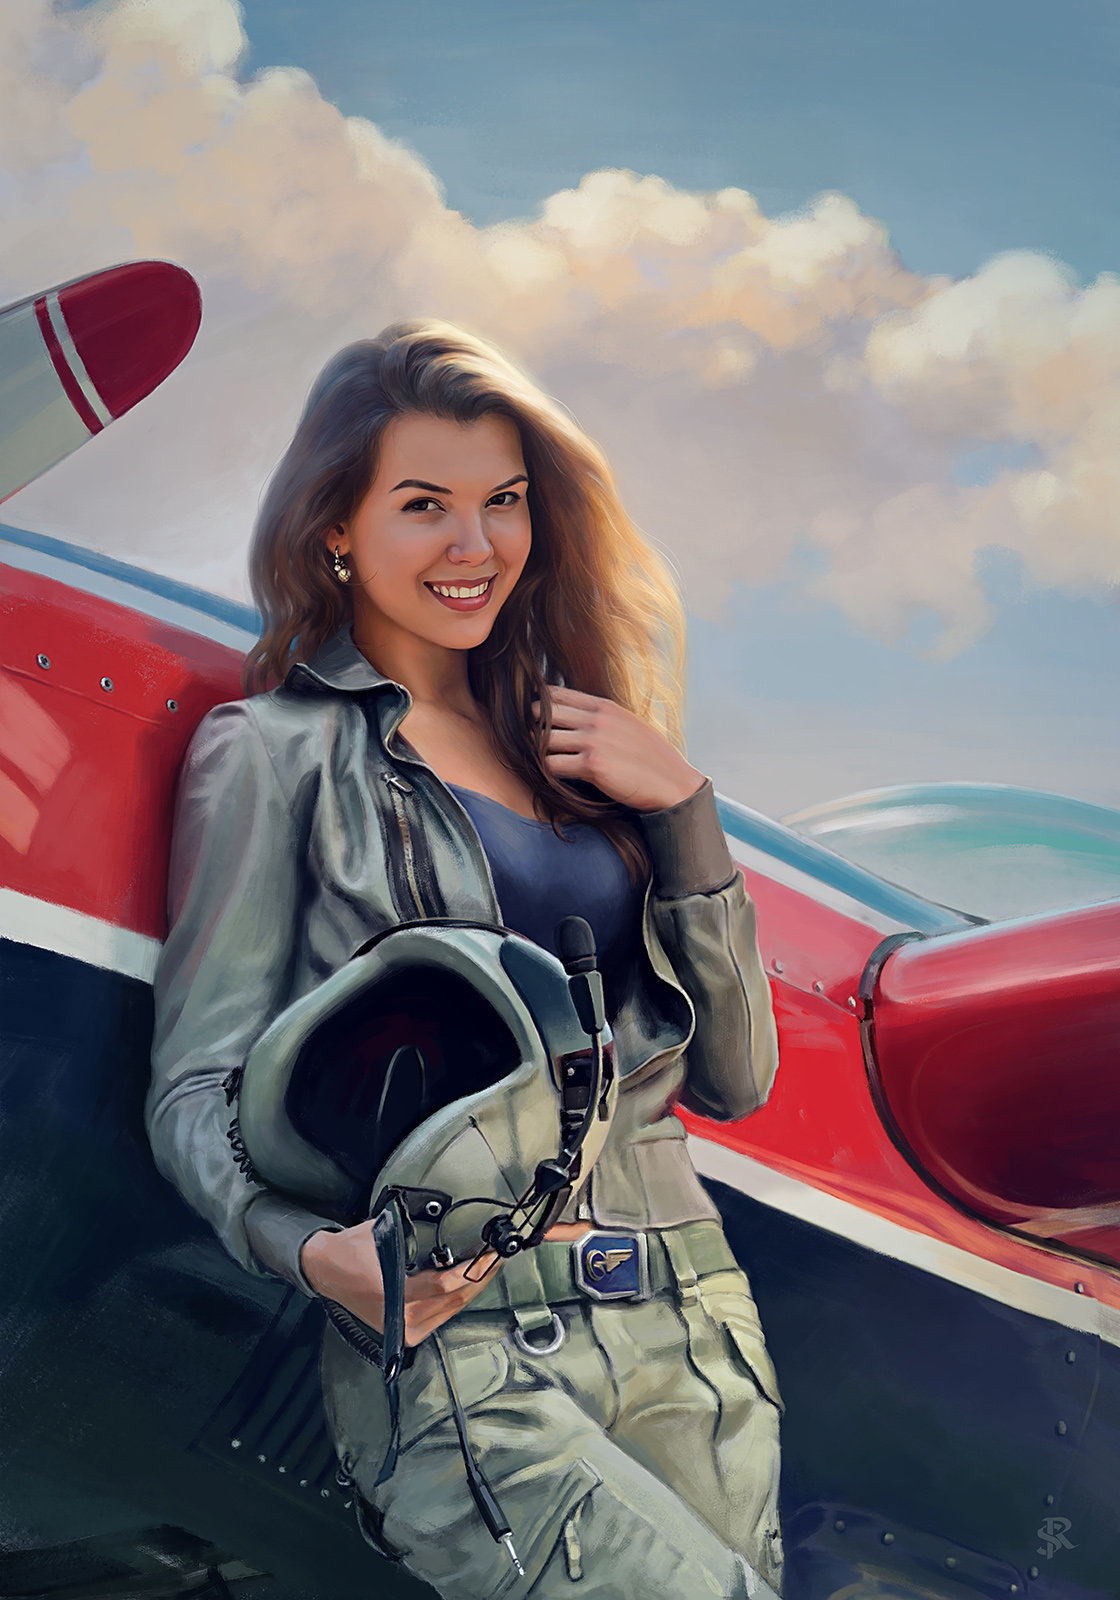 Aviator игра pinupaviator. Саша Усманова лётчица. Девушка в самолете. Девушка пилот.